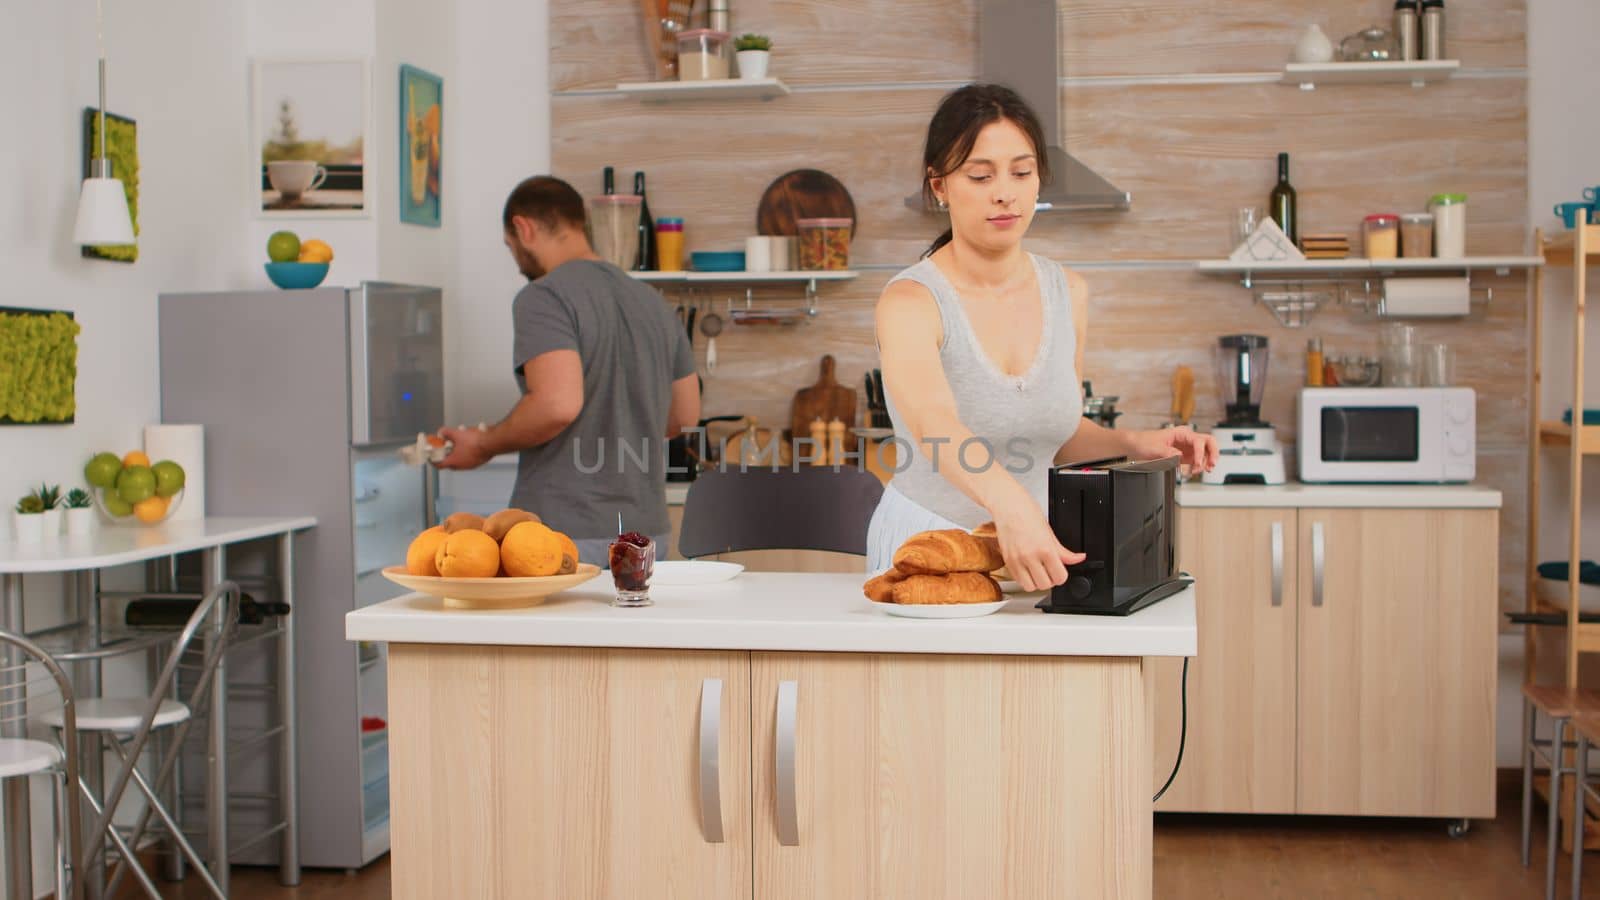 Housewife in pajamas preparing breakfast by DCStudio